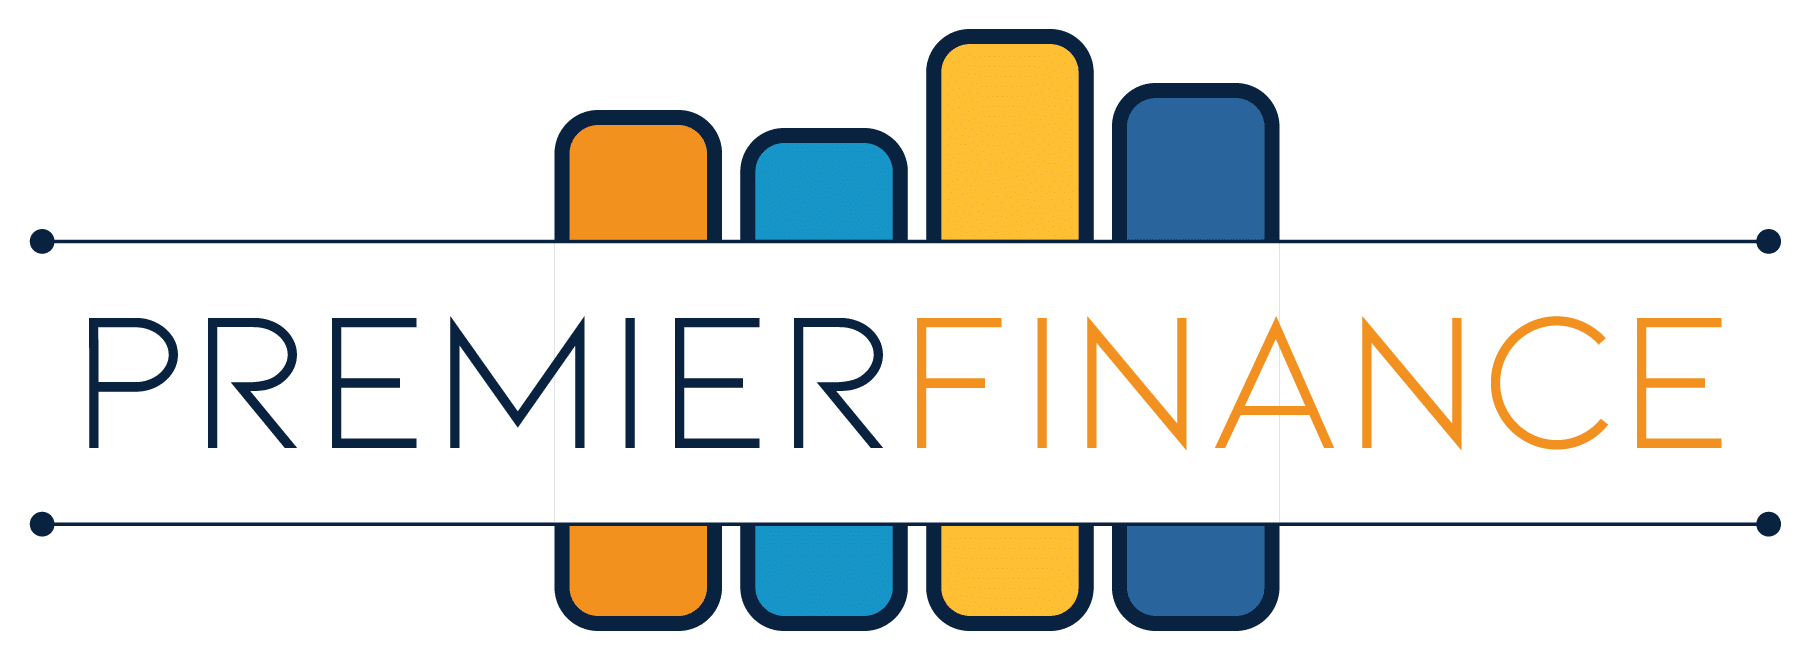 Pool Financing - Premier Finance